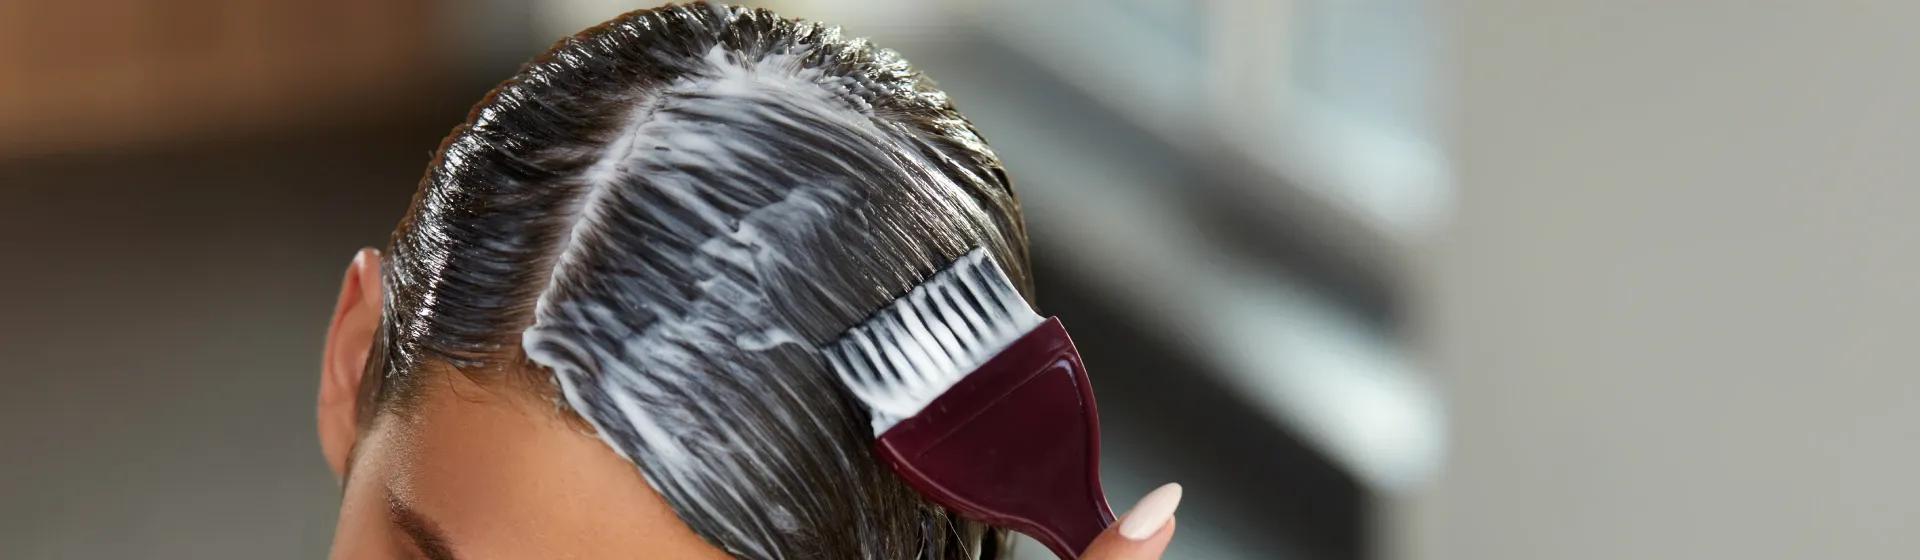 Mulher aplica um creme de tratamento no cabelo com um pincel